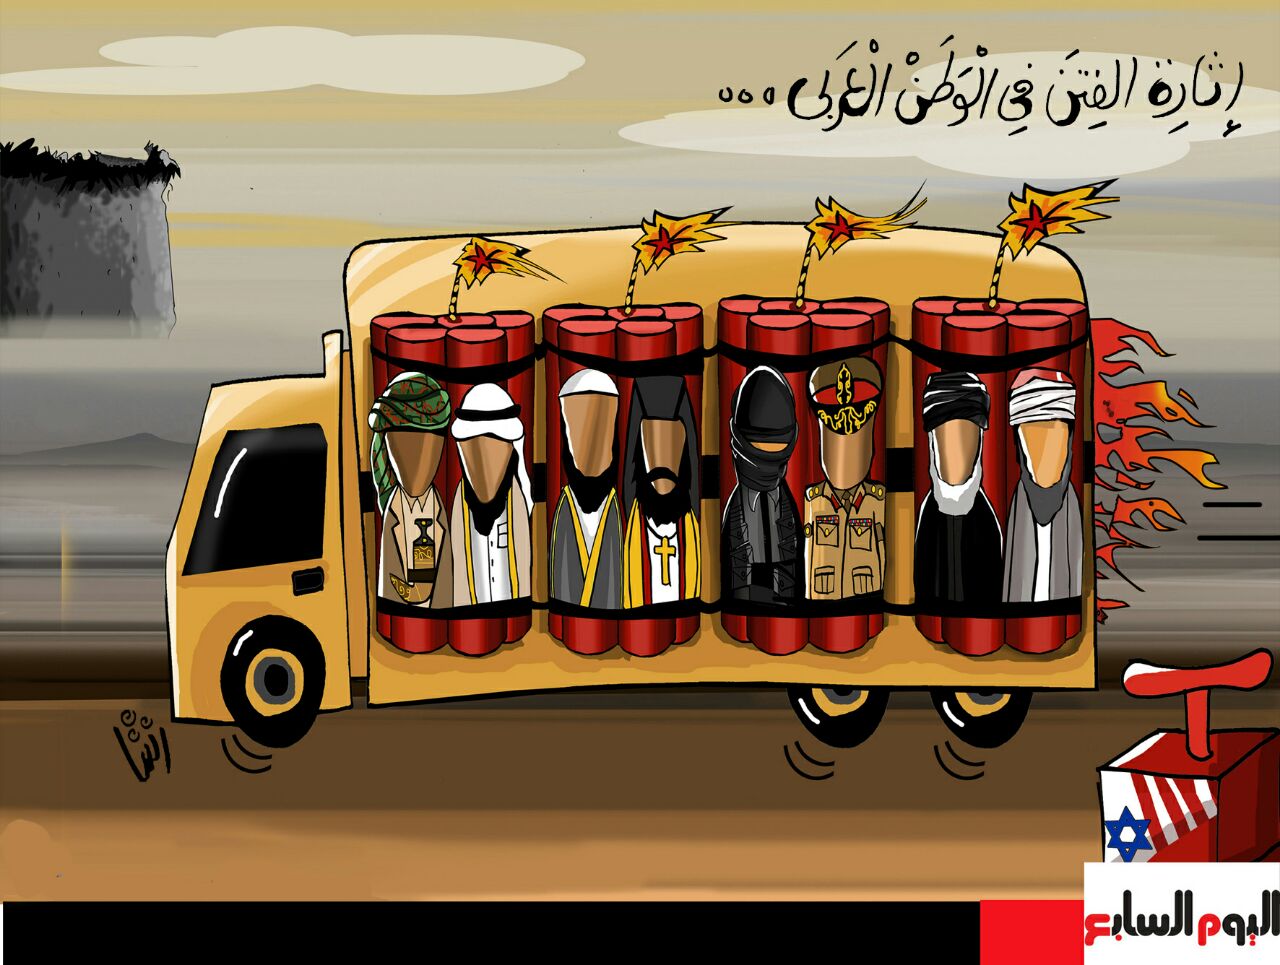  حال الدنيا.. نافذة على العالم بالكاريكاتير للفنانة رشا مهدى  (2)